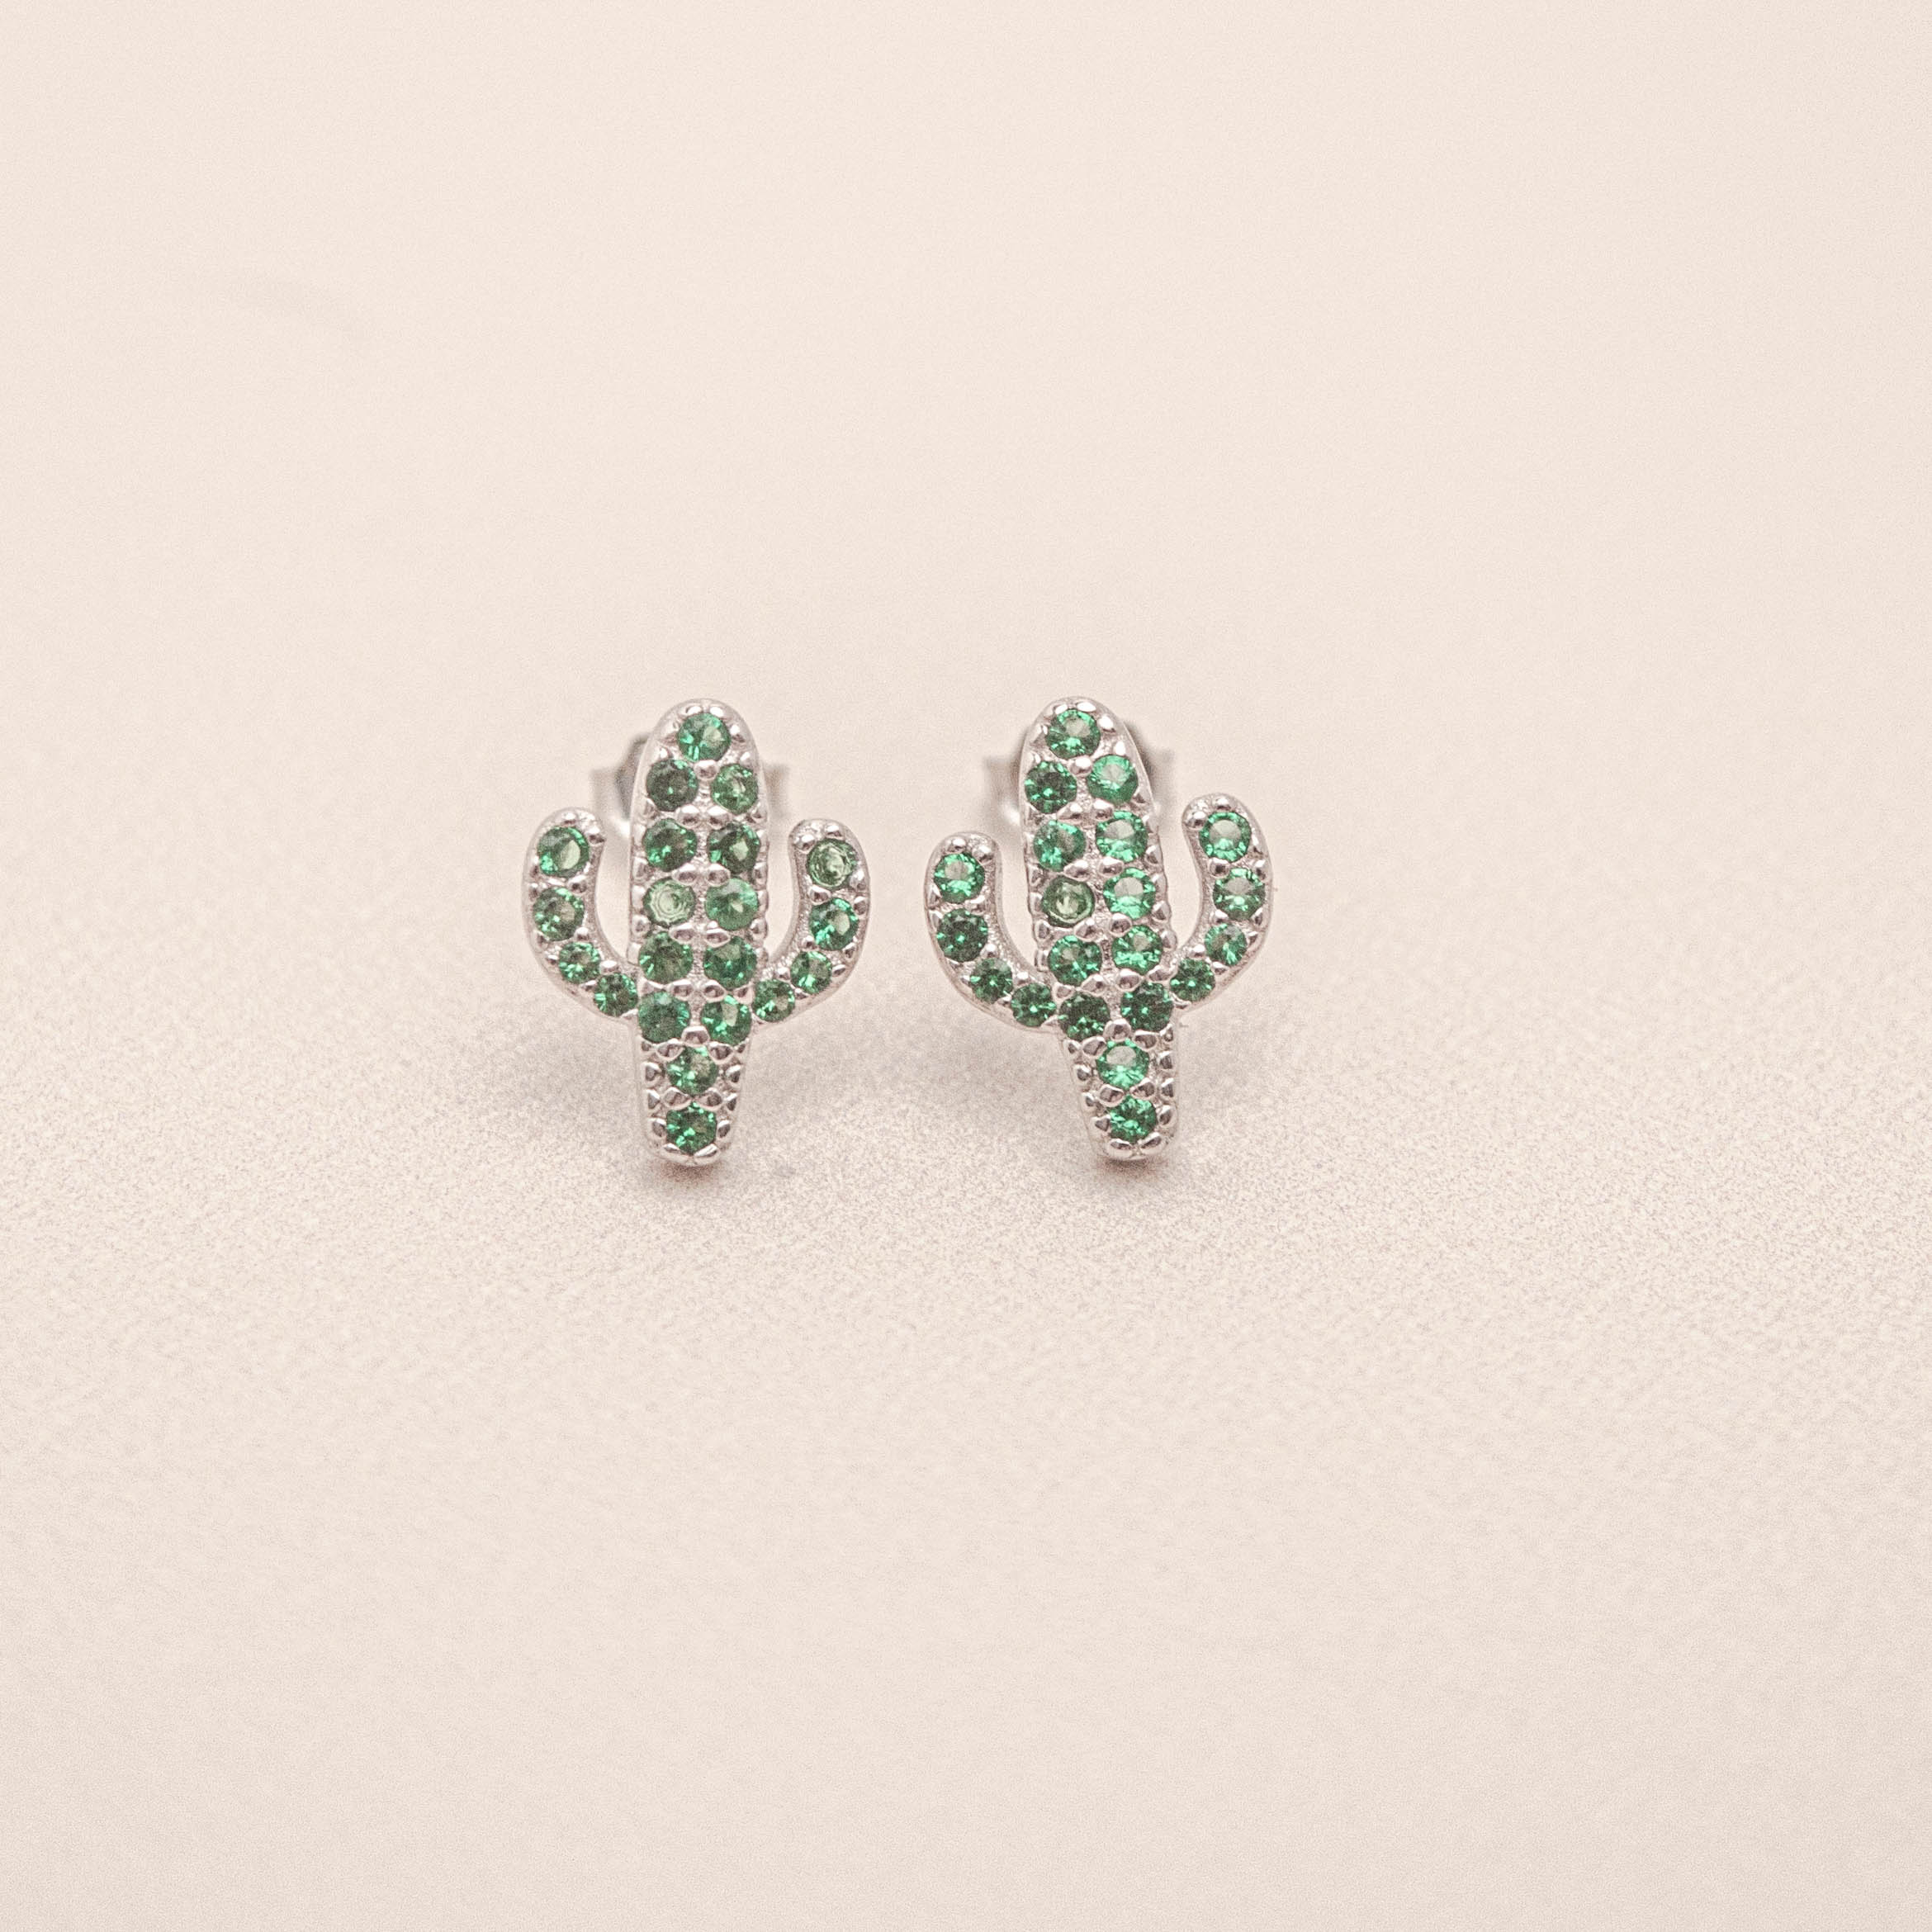 Cacti Cactus Stud Earrings